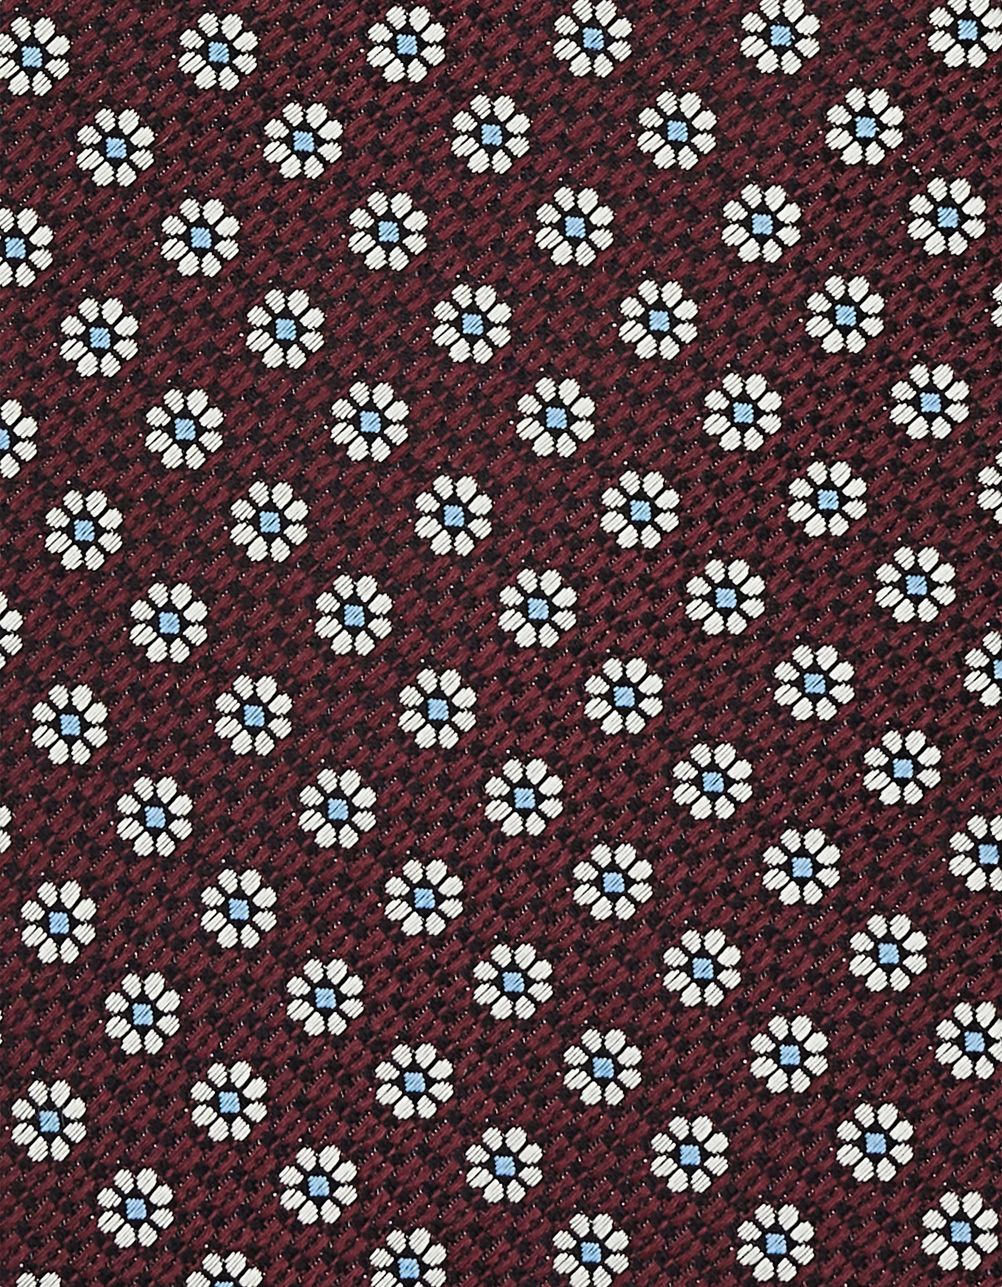 Burgundy patterned silk tie